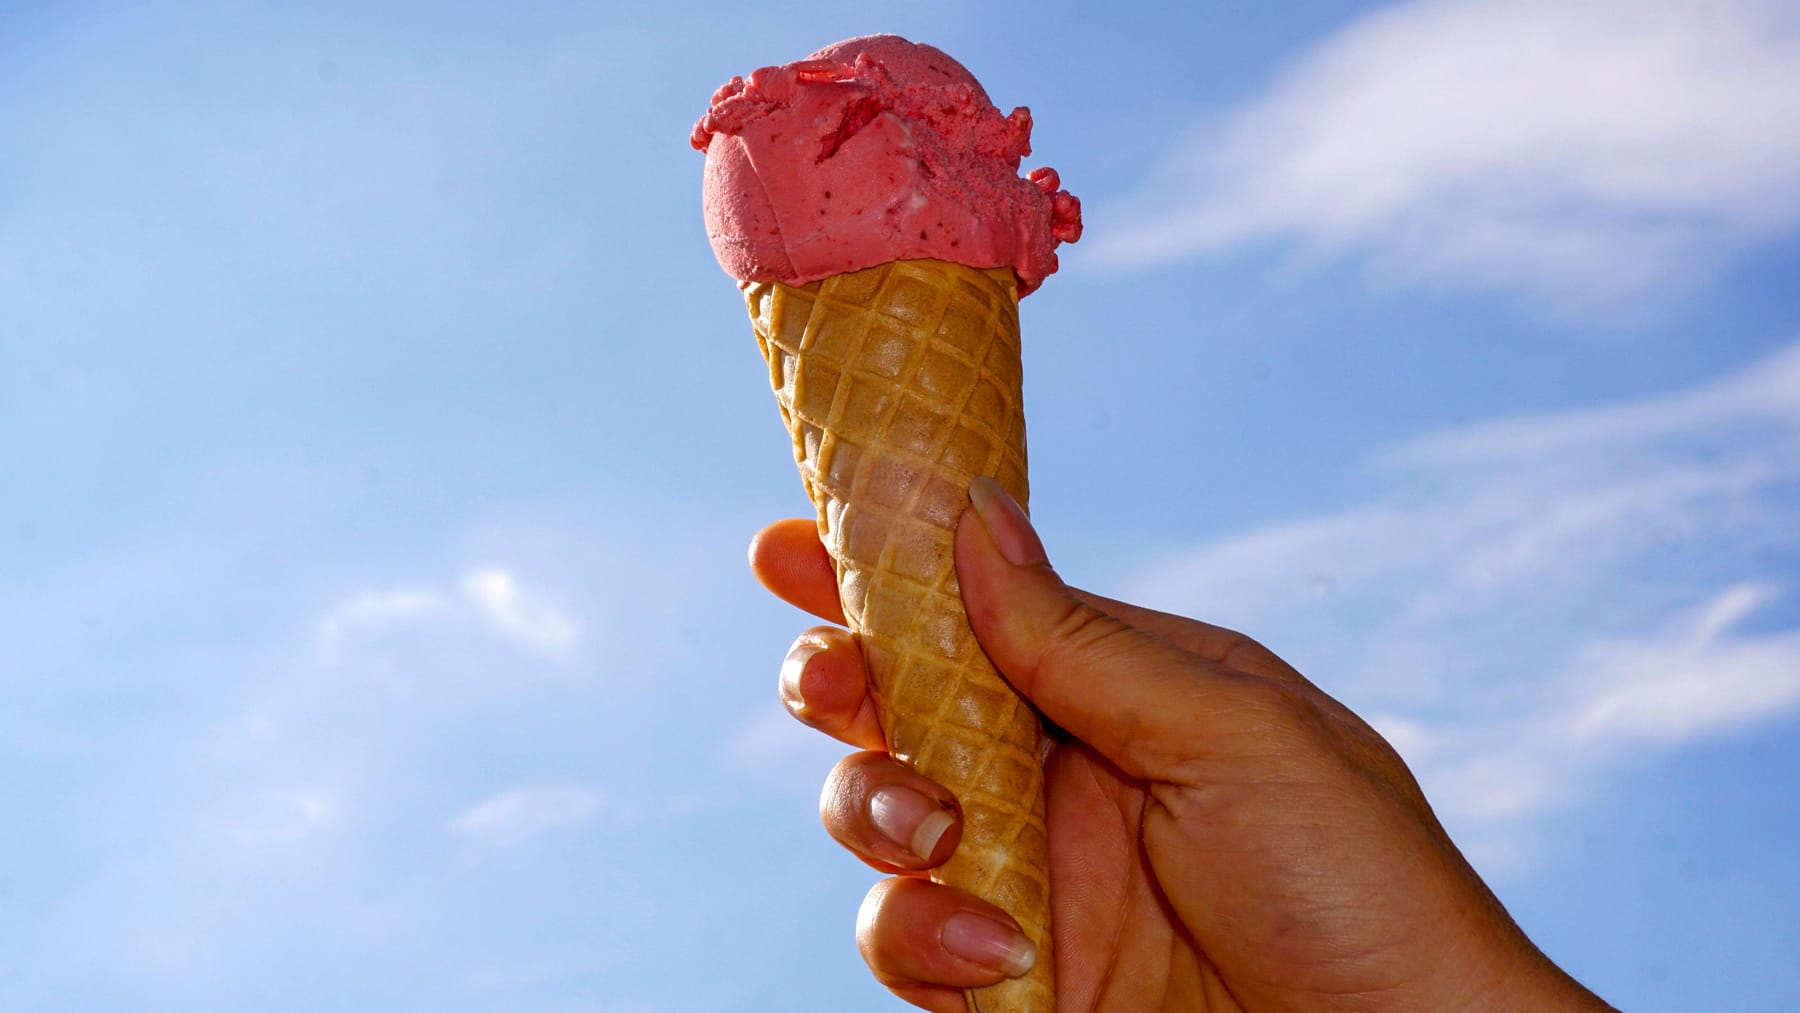 Nei fine settimana le gelaterie fanno pagare dieci centesimi per una pallina di gelato